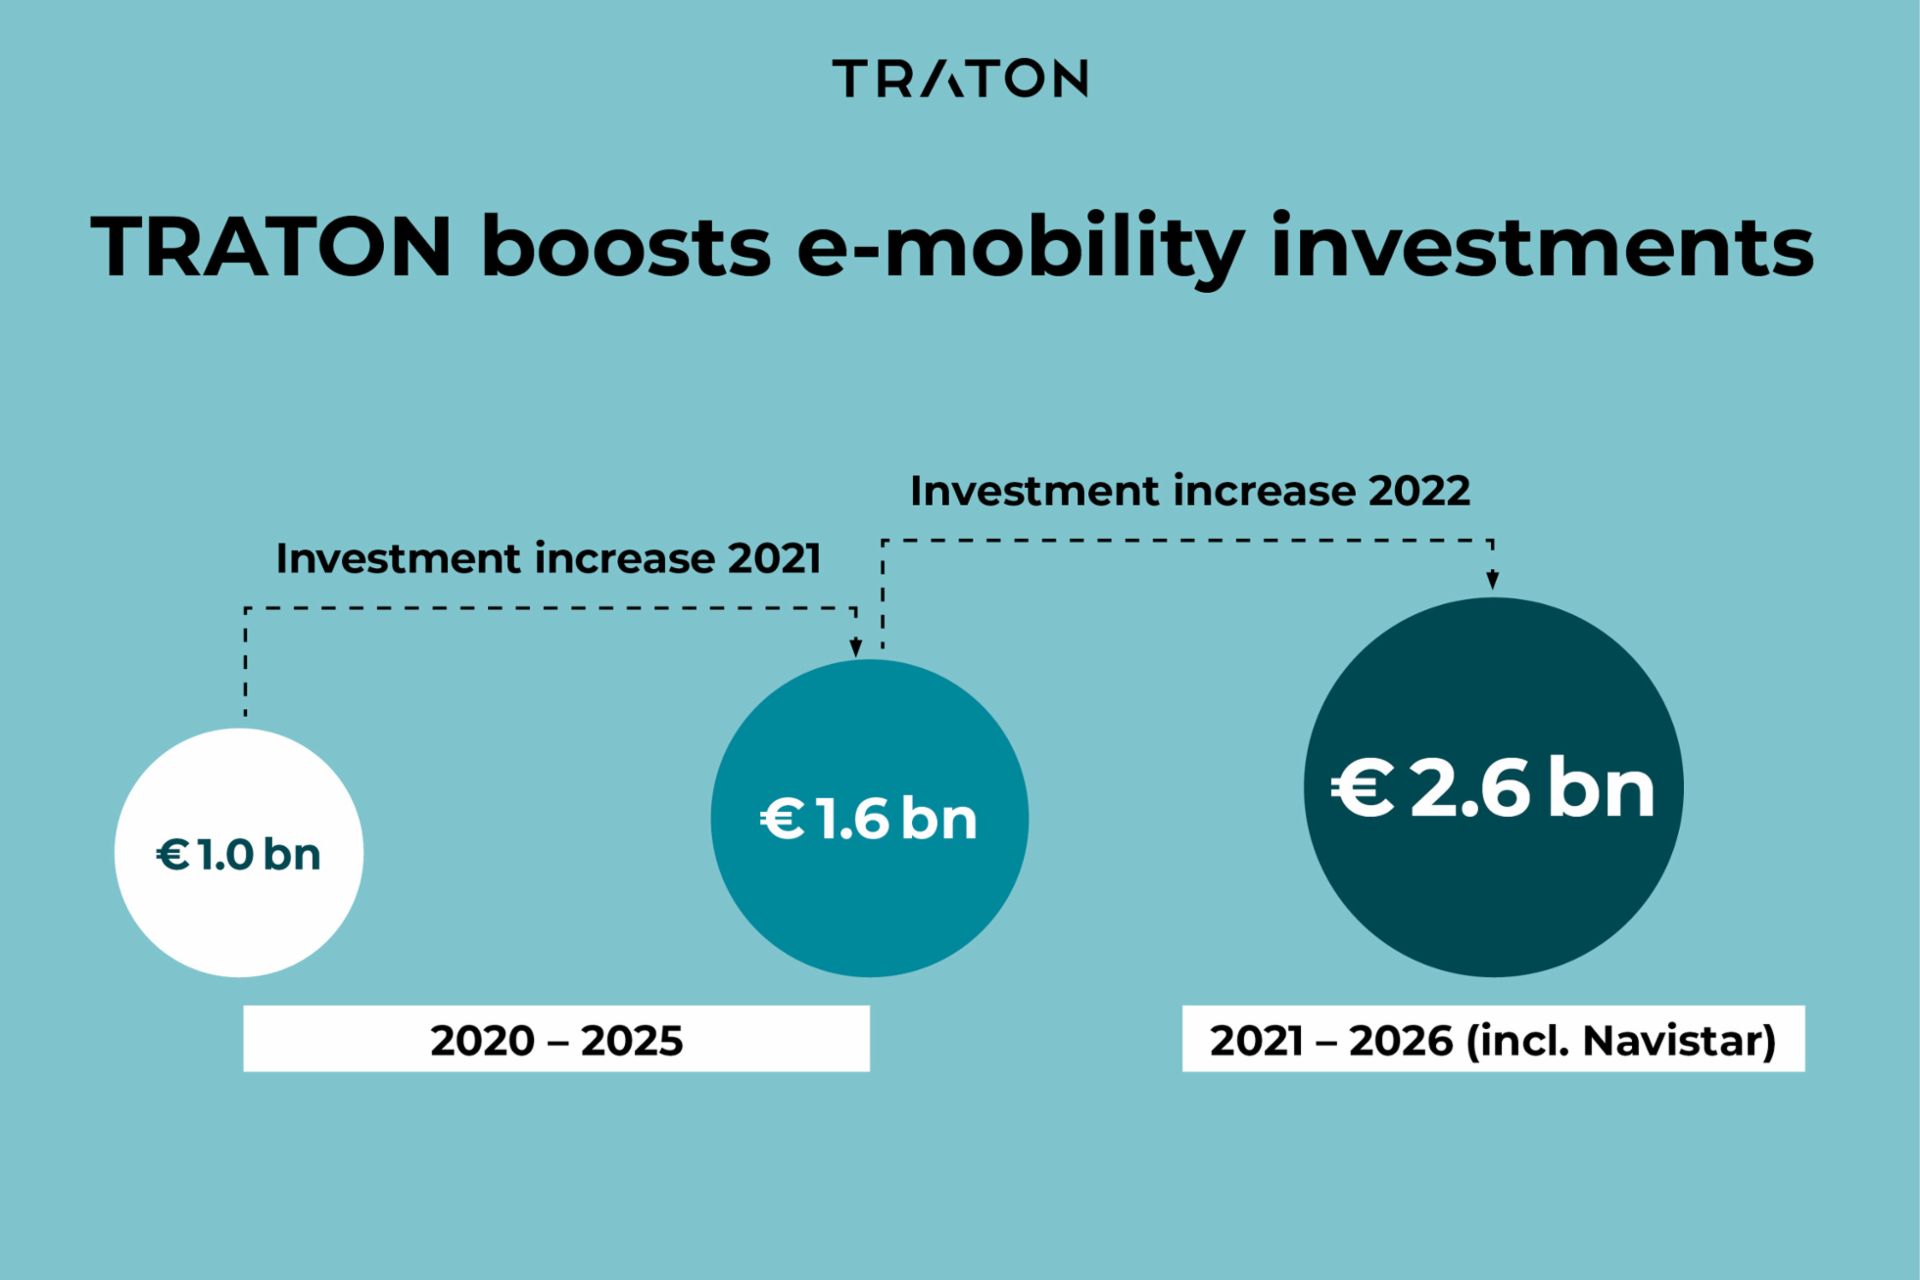 Comparison TRATON investemnt increase e-mobility 2021 and 2022
                 